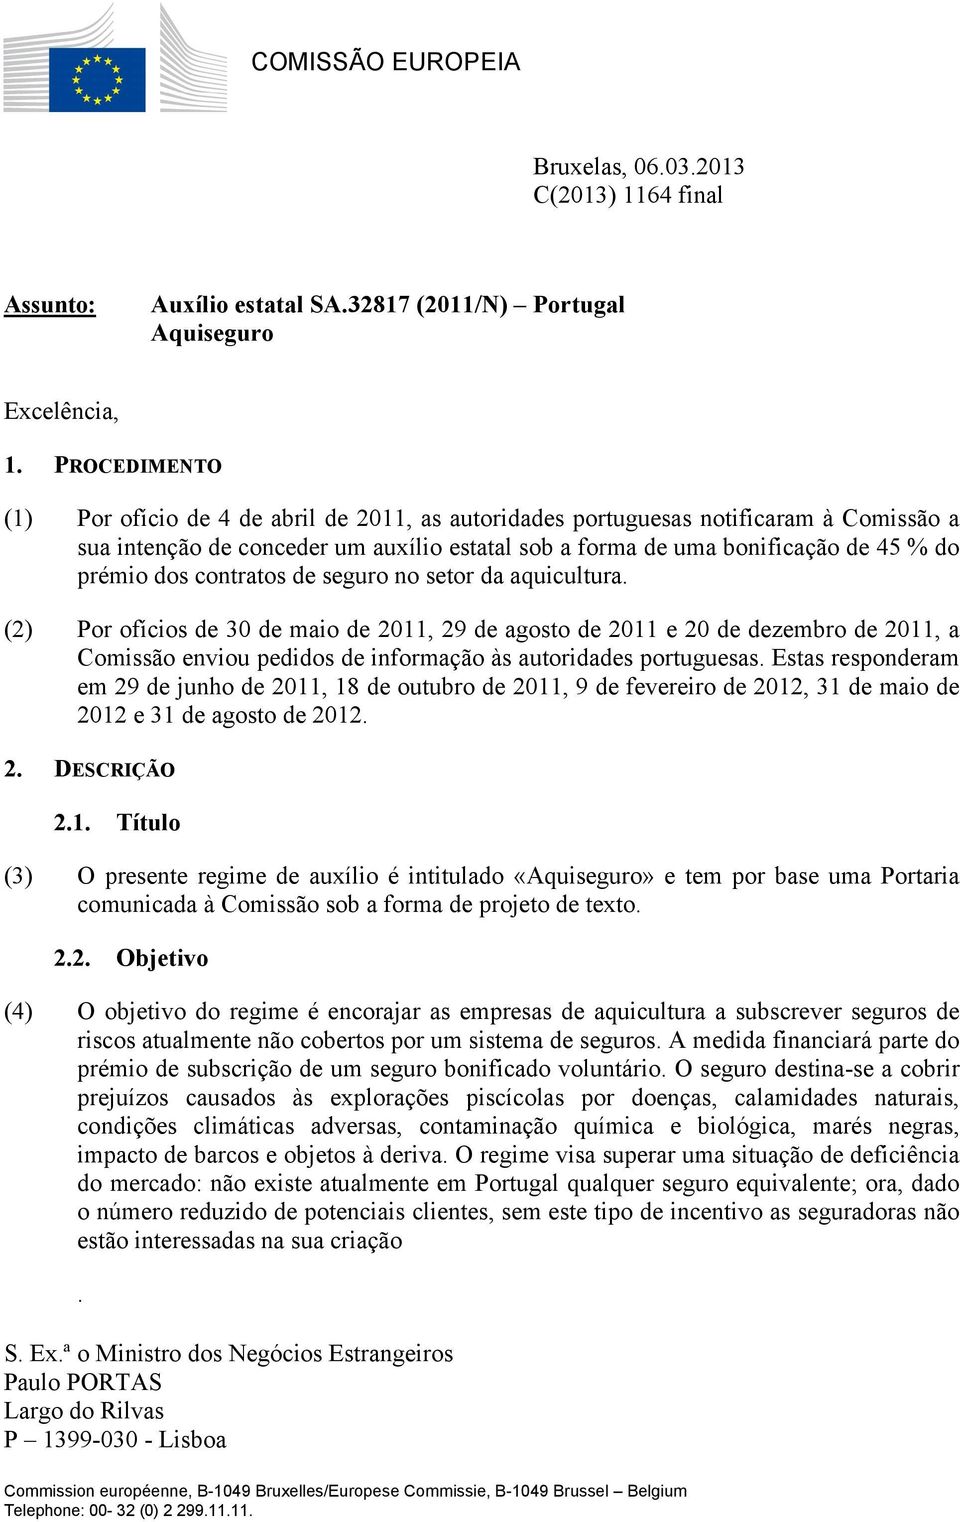 contratos de seguro no setor da aquicultura. (2) Por ofícios de 30 de maio de 2011, 29 de agosto de 2011 e 20 de dezembro de 2011, a Comissão enviou pedidos de informação às autoridades portuguesas.